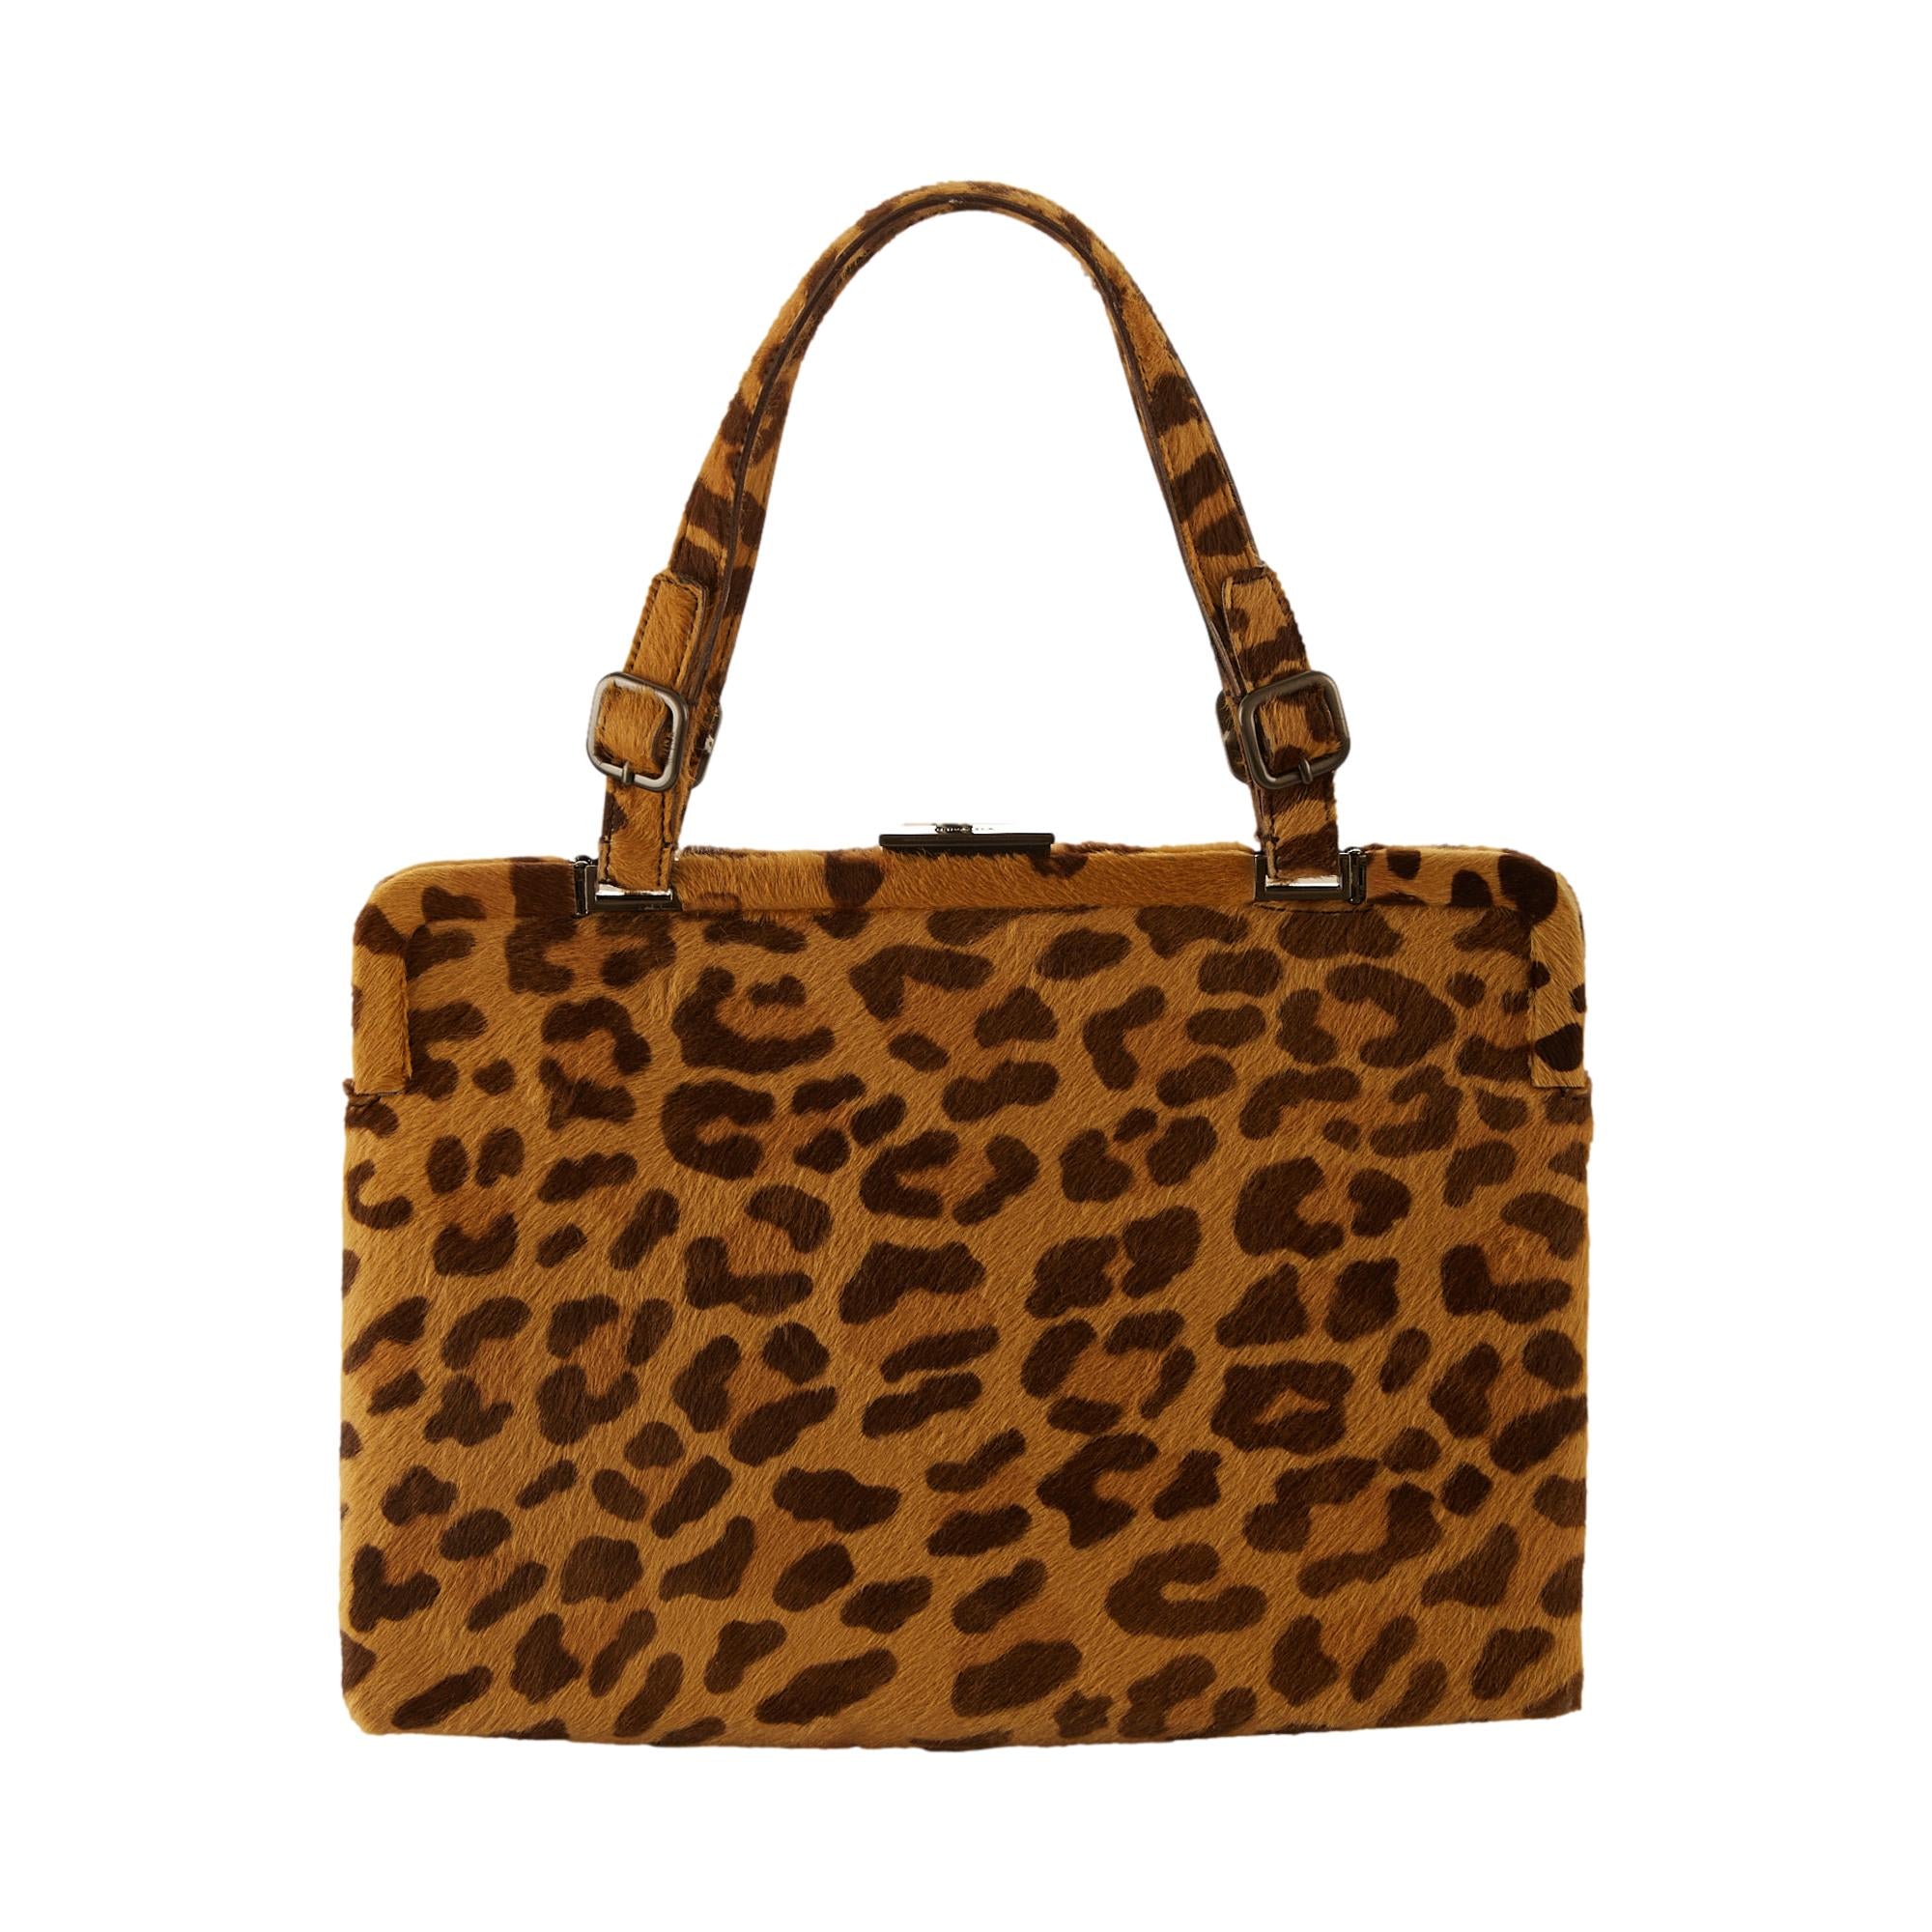 Cheetah print bag